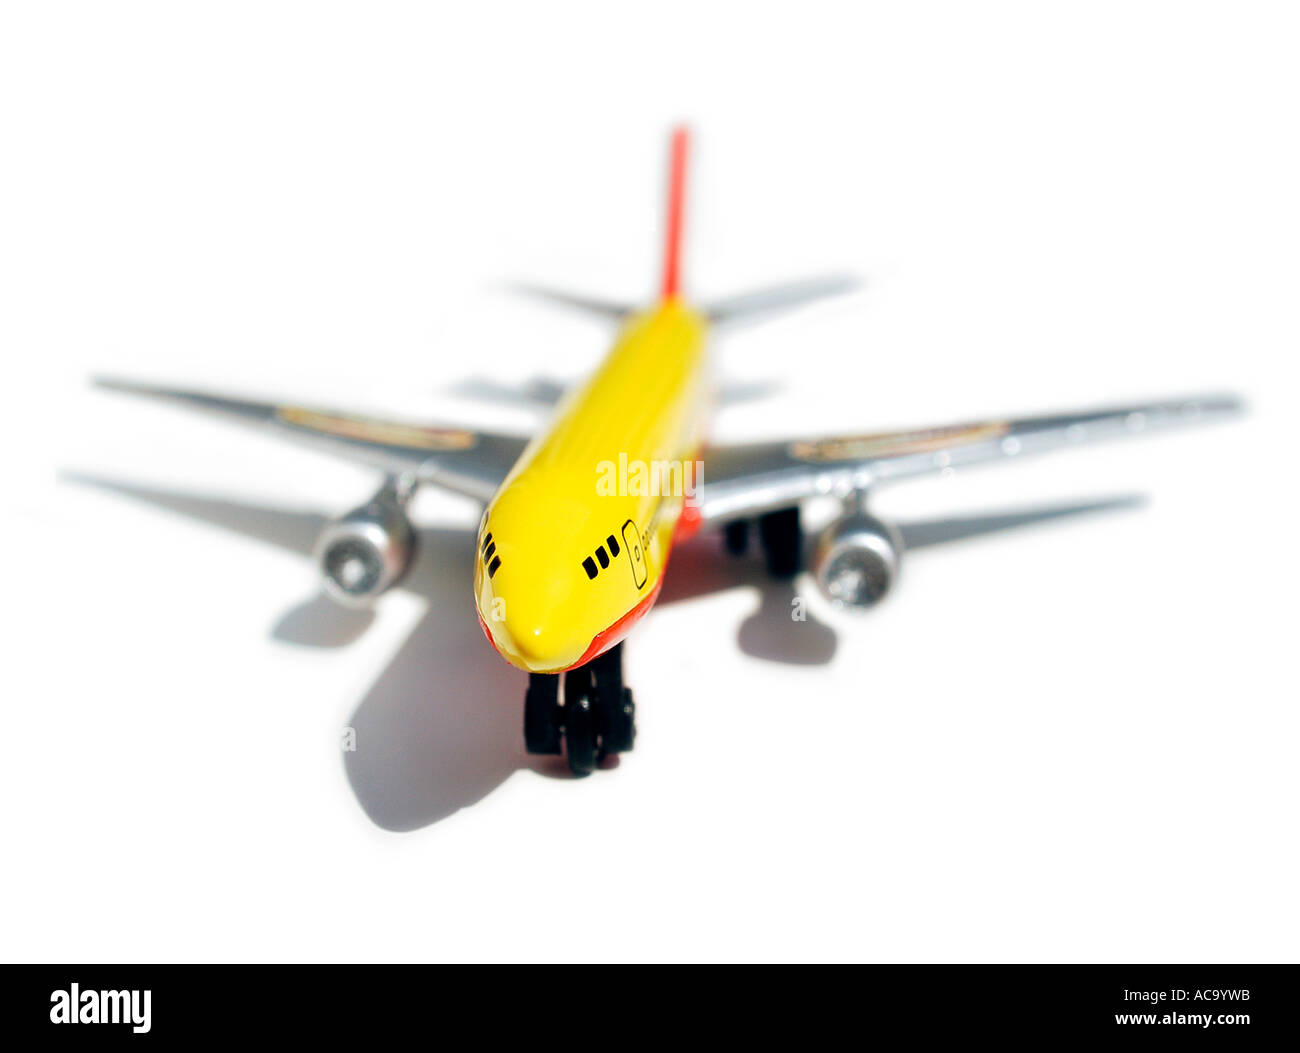 Matchbox aereo modello. Foto di Patrick patricksteel in acciaio Foto Stock